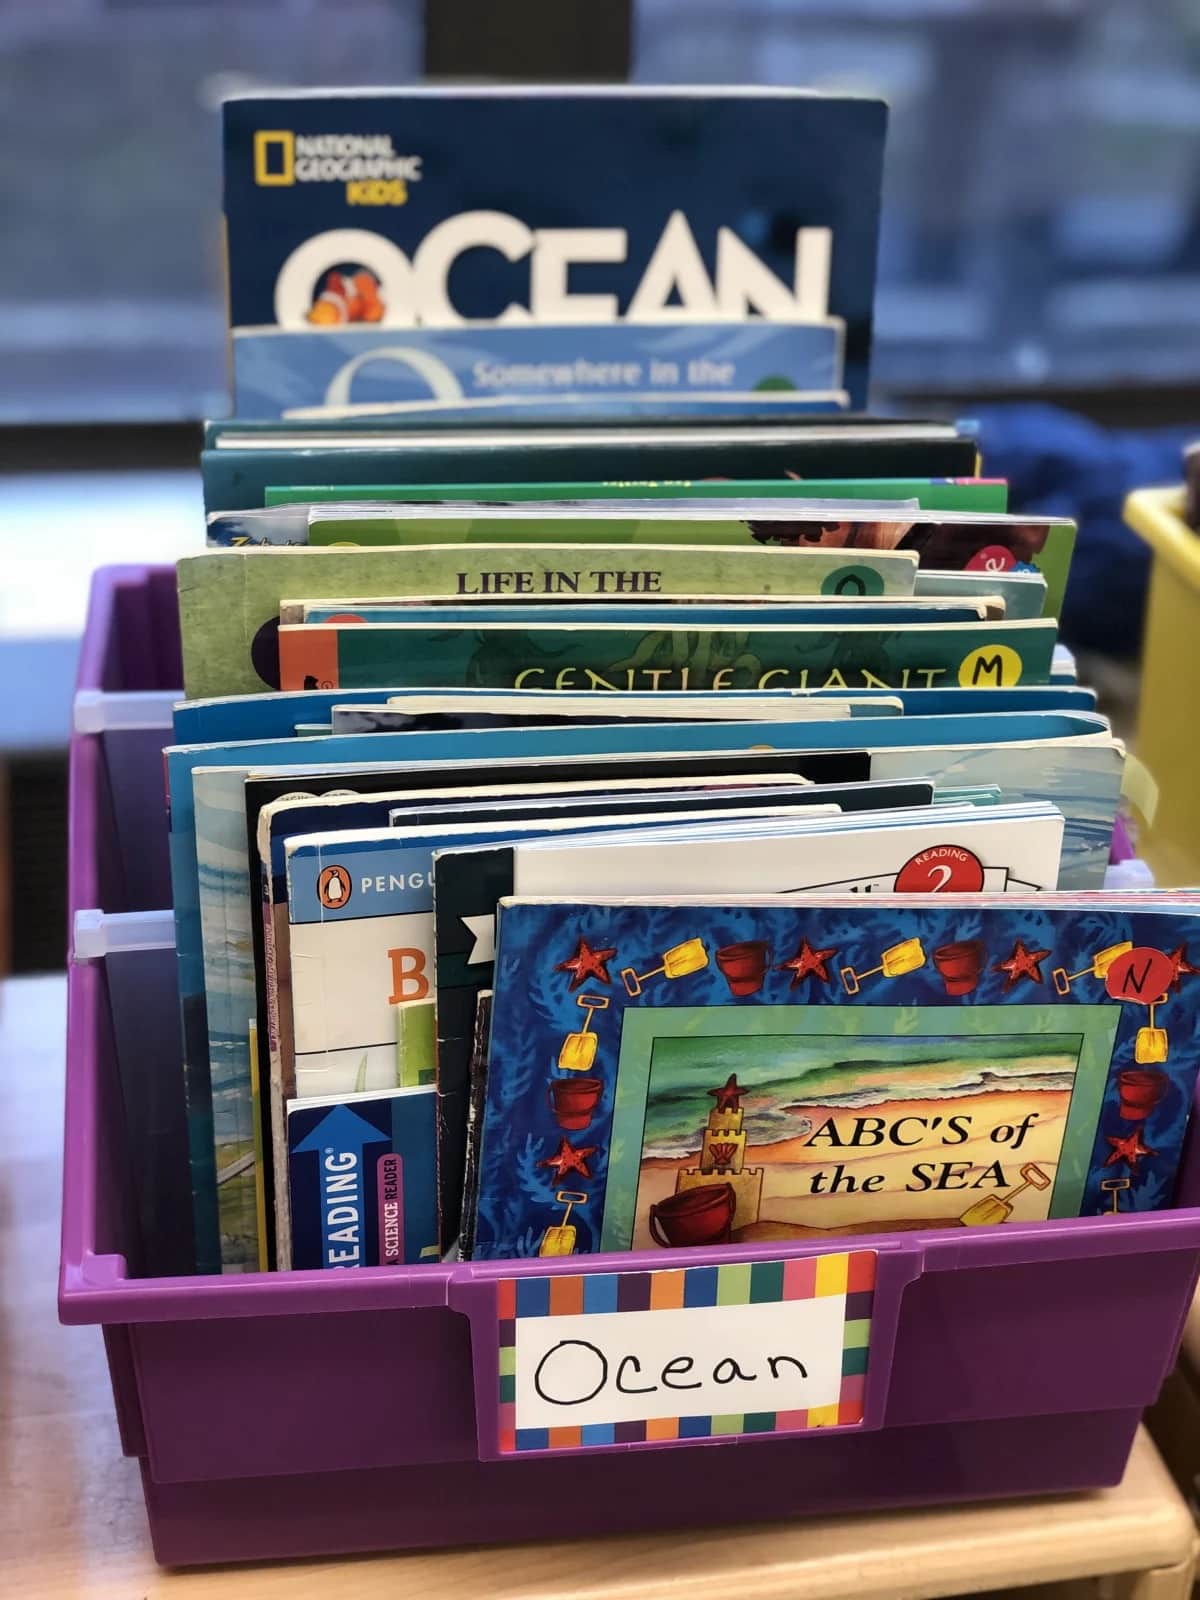 Picture of "ocean" themed books in purple bin